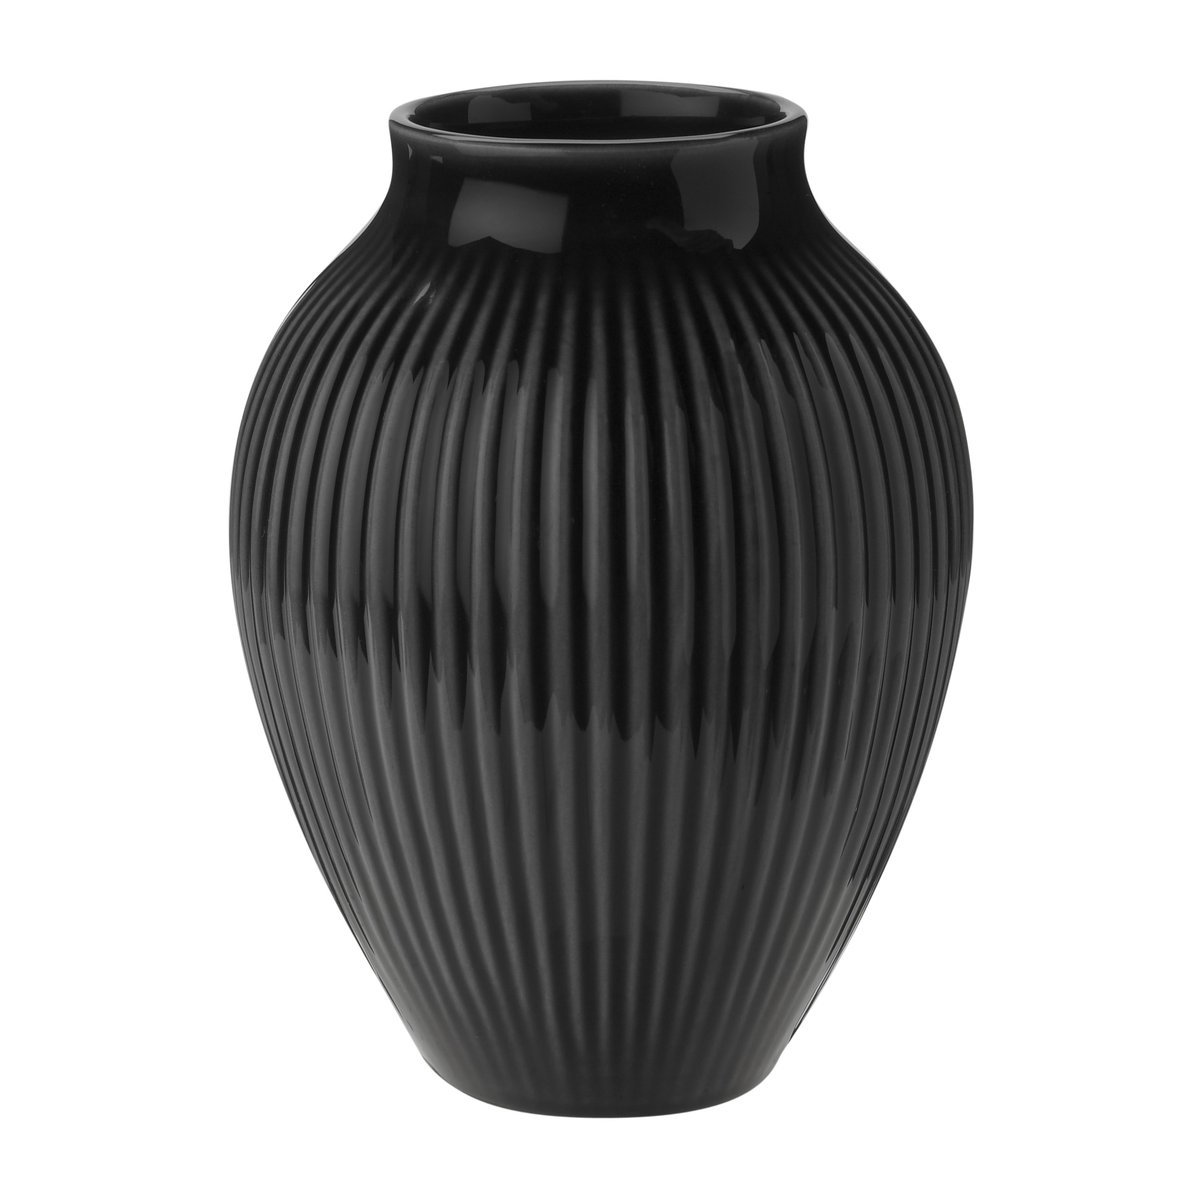 Knabstrup Keramik Knabstrup vase riflet 12,5 cm Sort